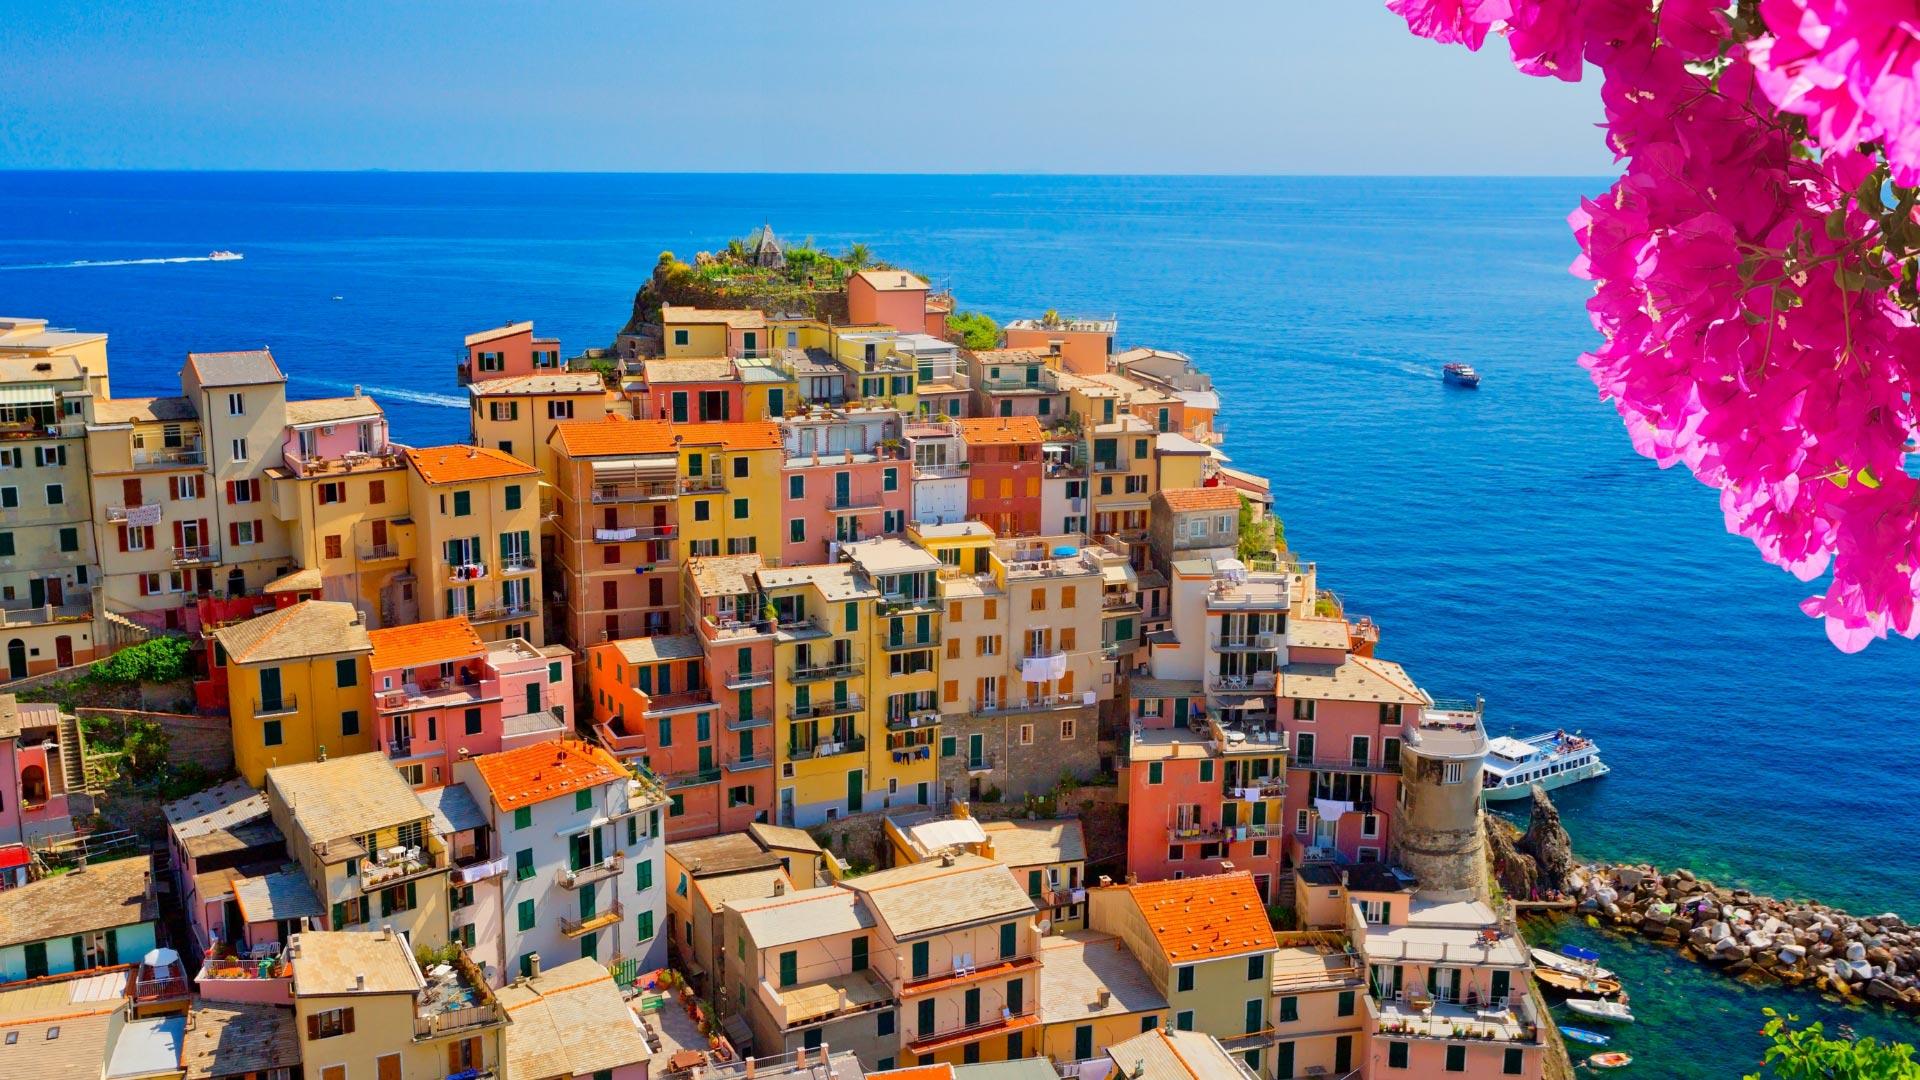 Maisons colorées sur une falaise, mer bleue et fleurs roses.